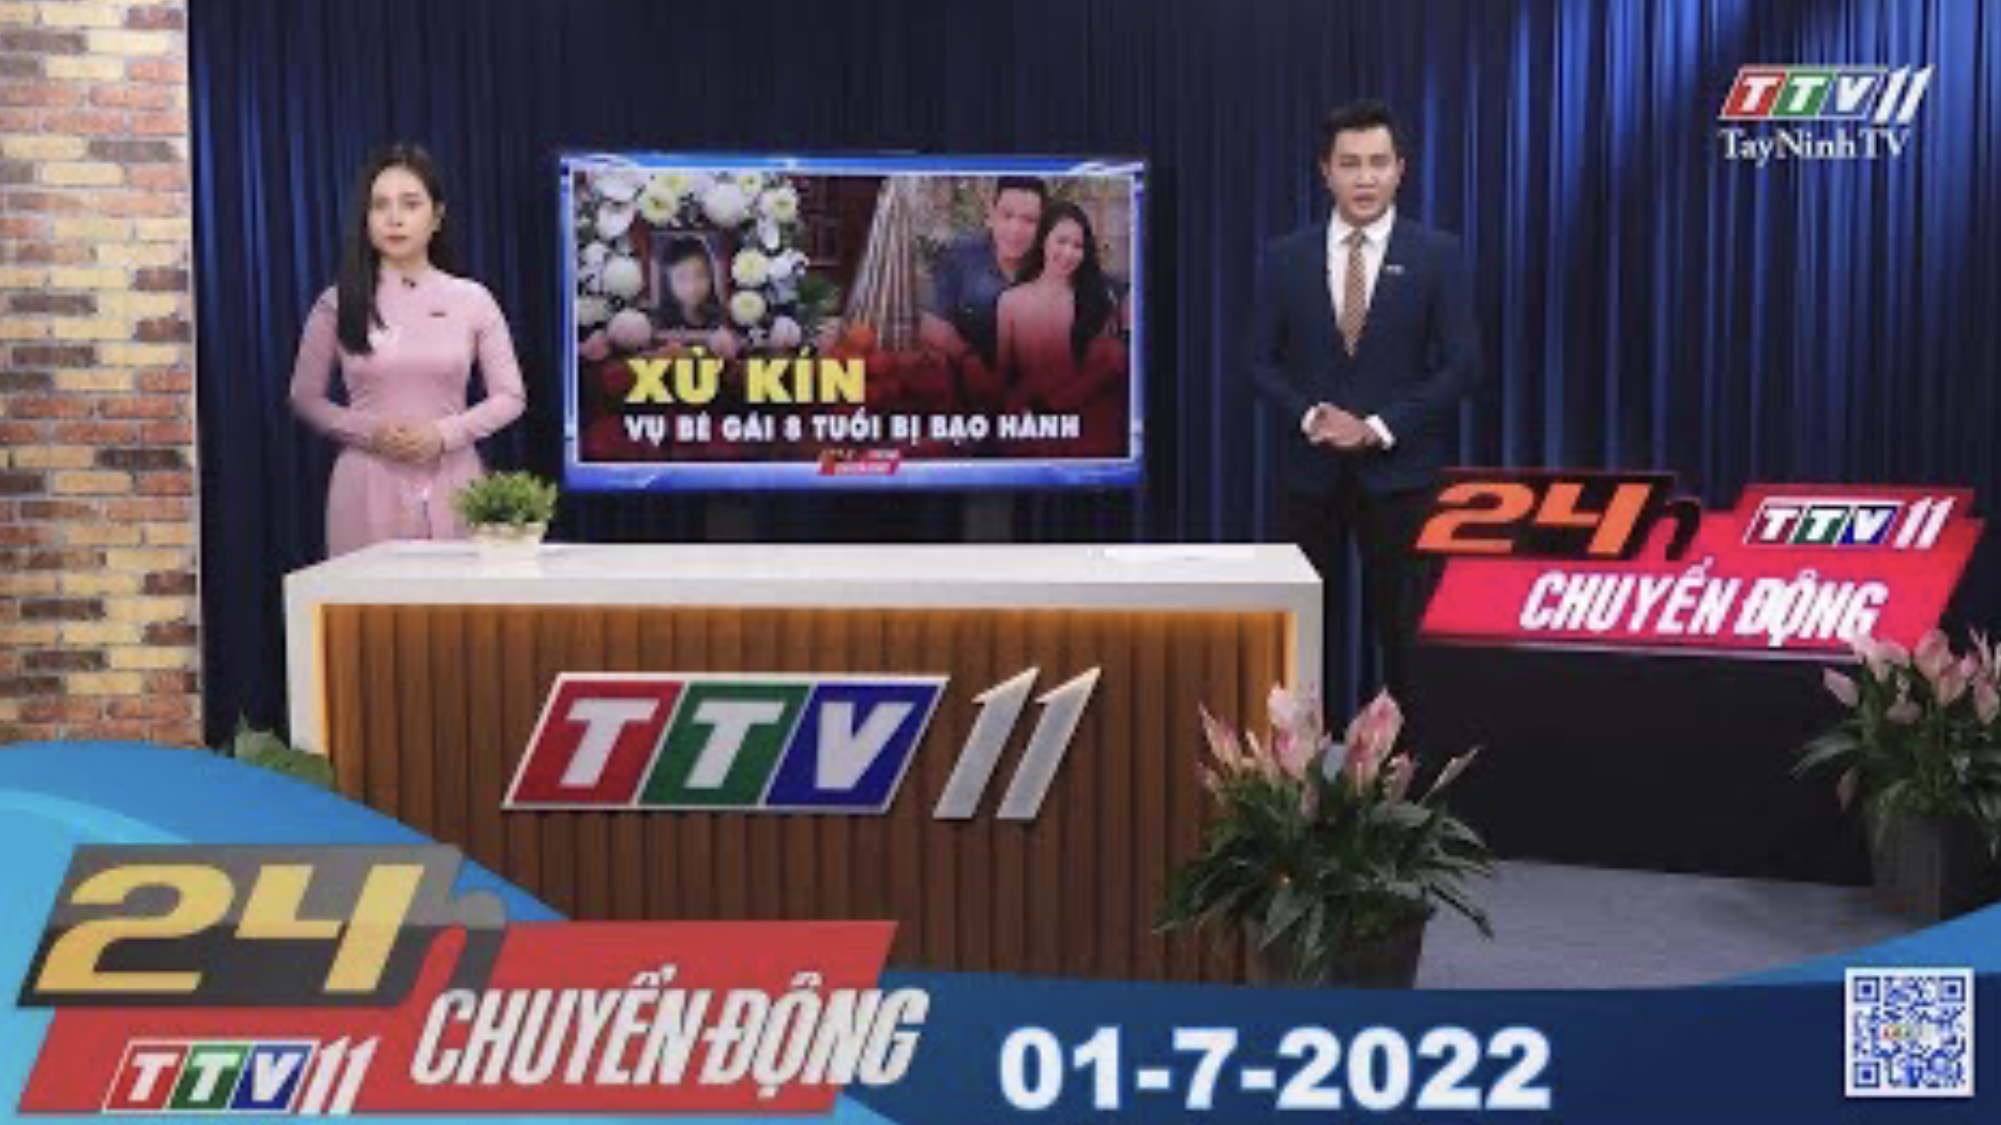 24h Chuyển động 01-7-2022 | Tin tức hôm nay | TayNinhTV